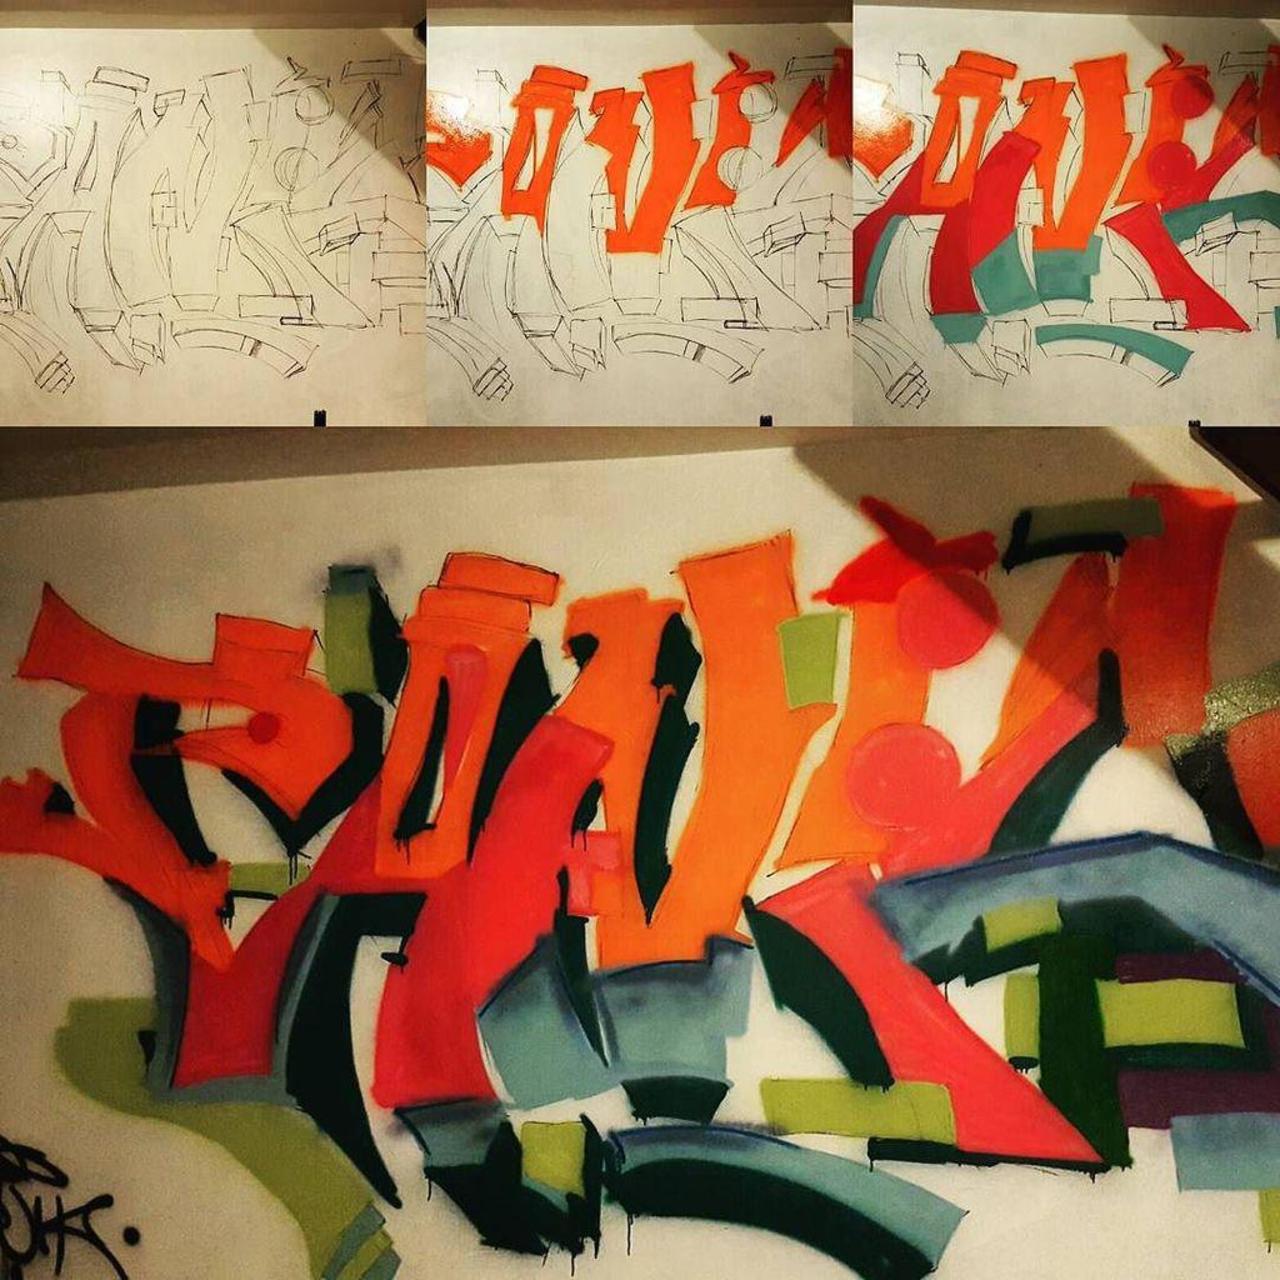 RT @artpushr: via #85nate "http://bit.ly/1PcGvP2" #graffiti #streetart http://t.co/kROMq7JzMi